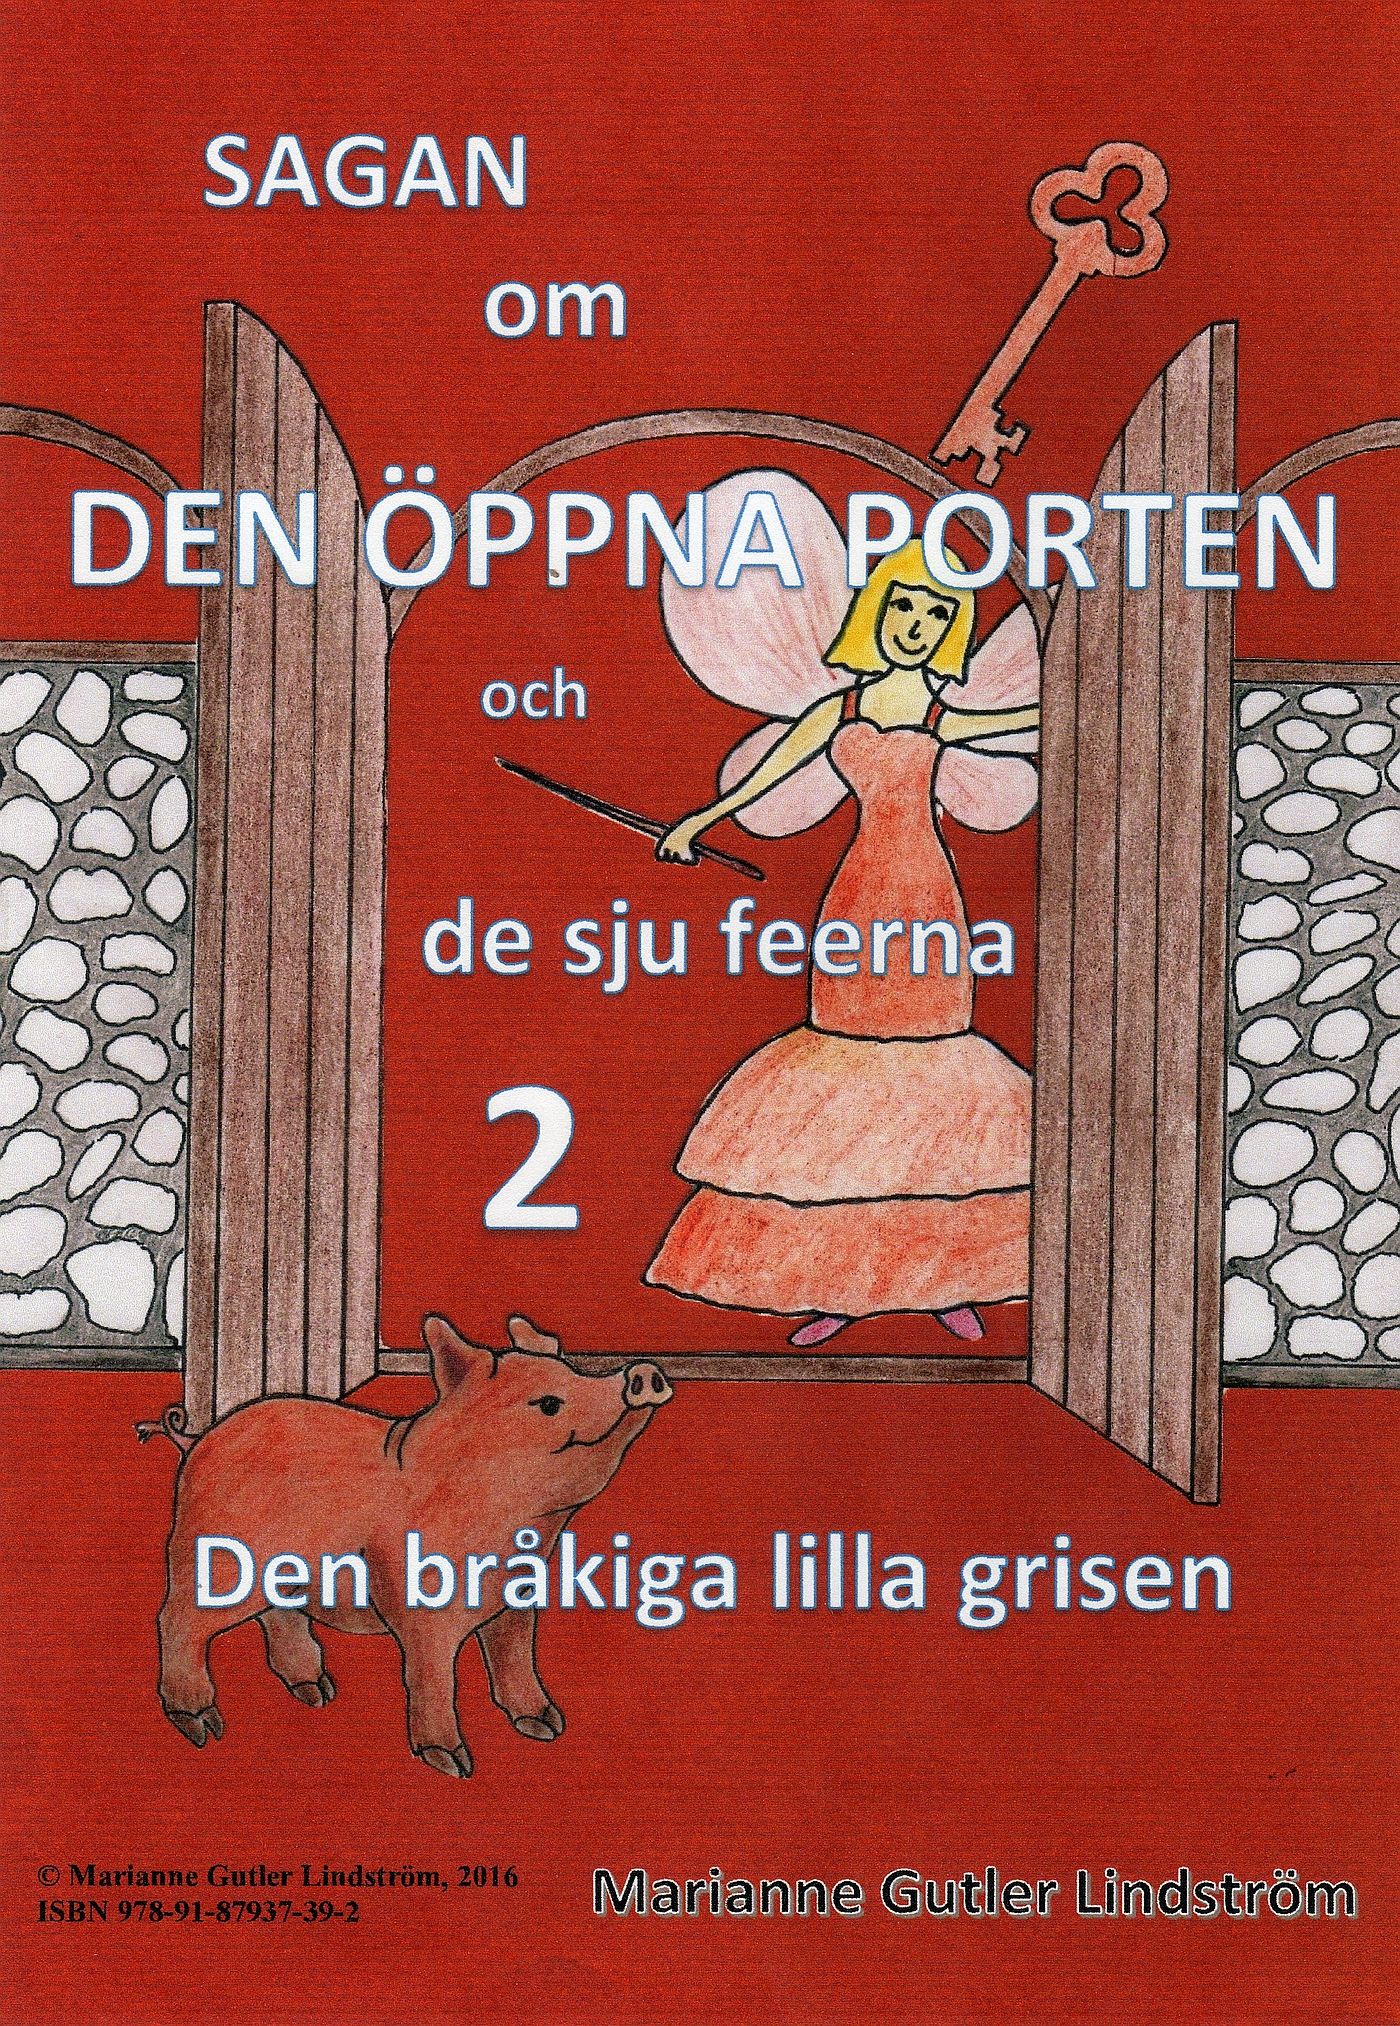 Sagan om den öppna porten 2. Den bråkiga lilla grisen, e-bok av Marianne Gutler Lindström